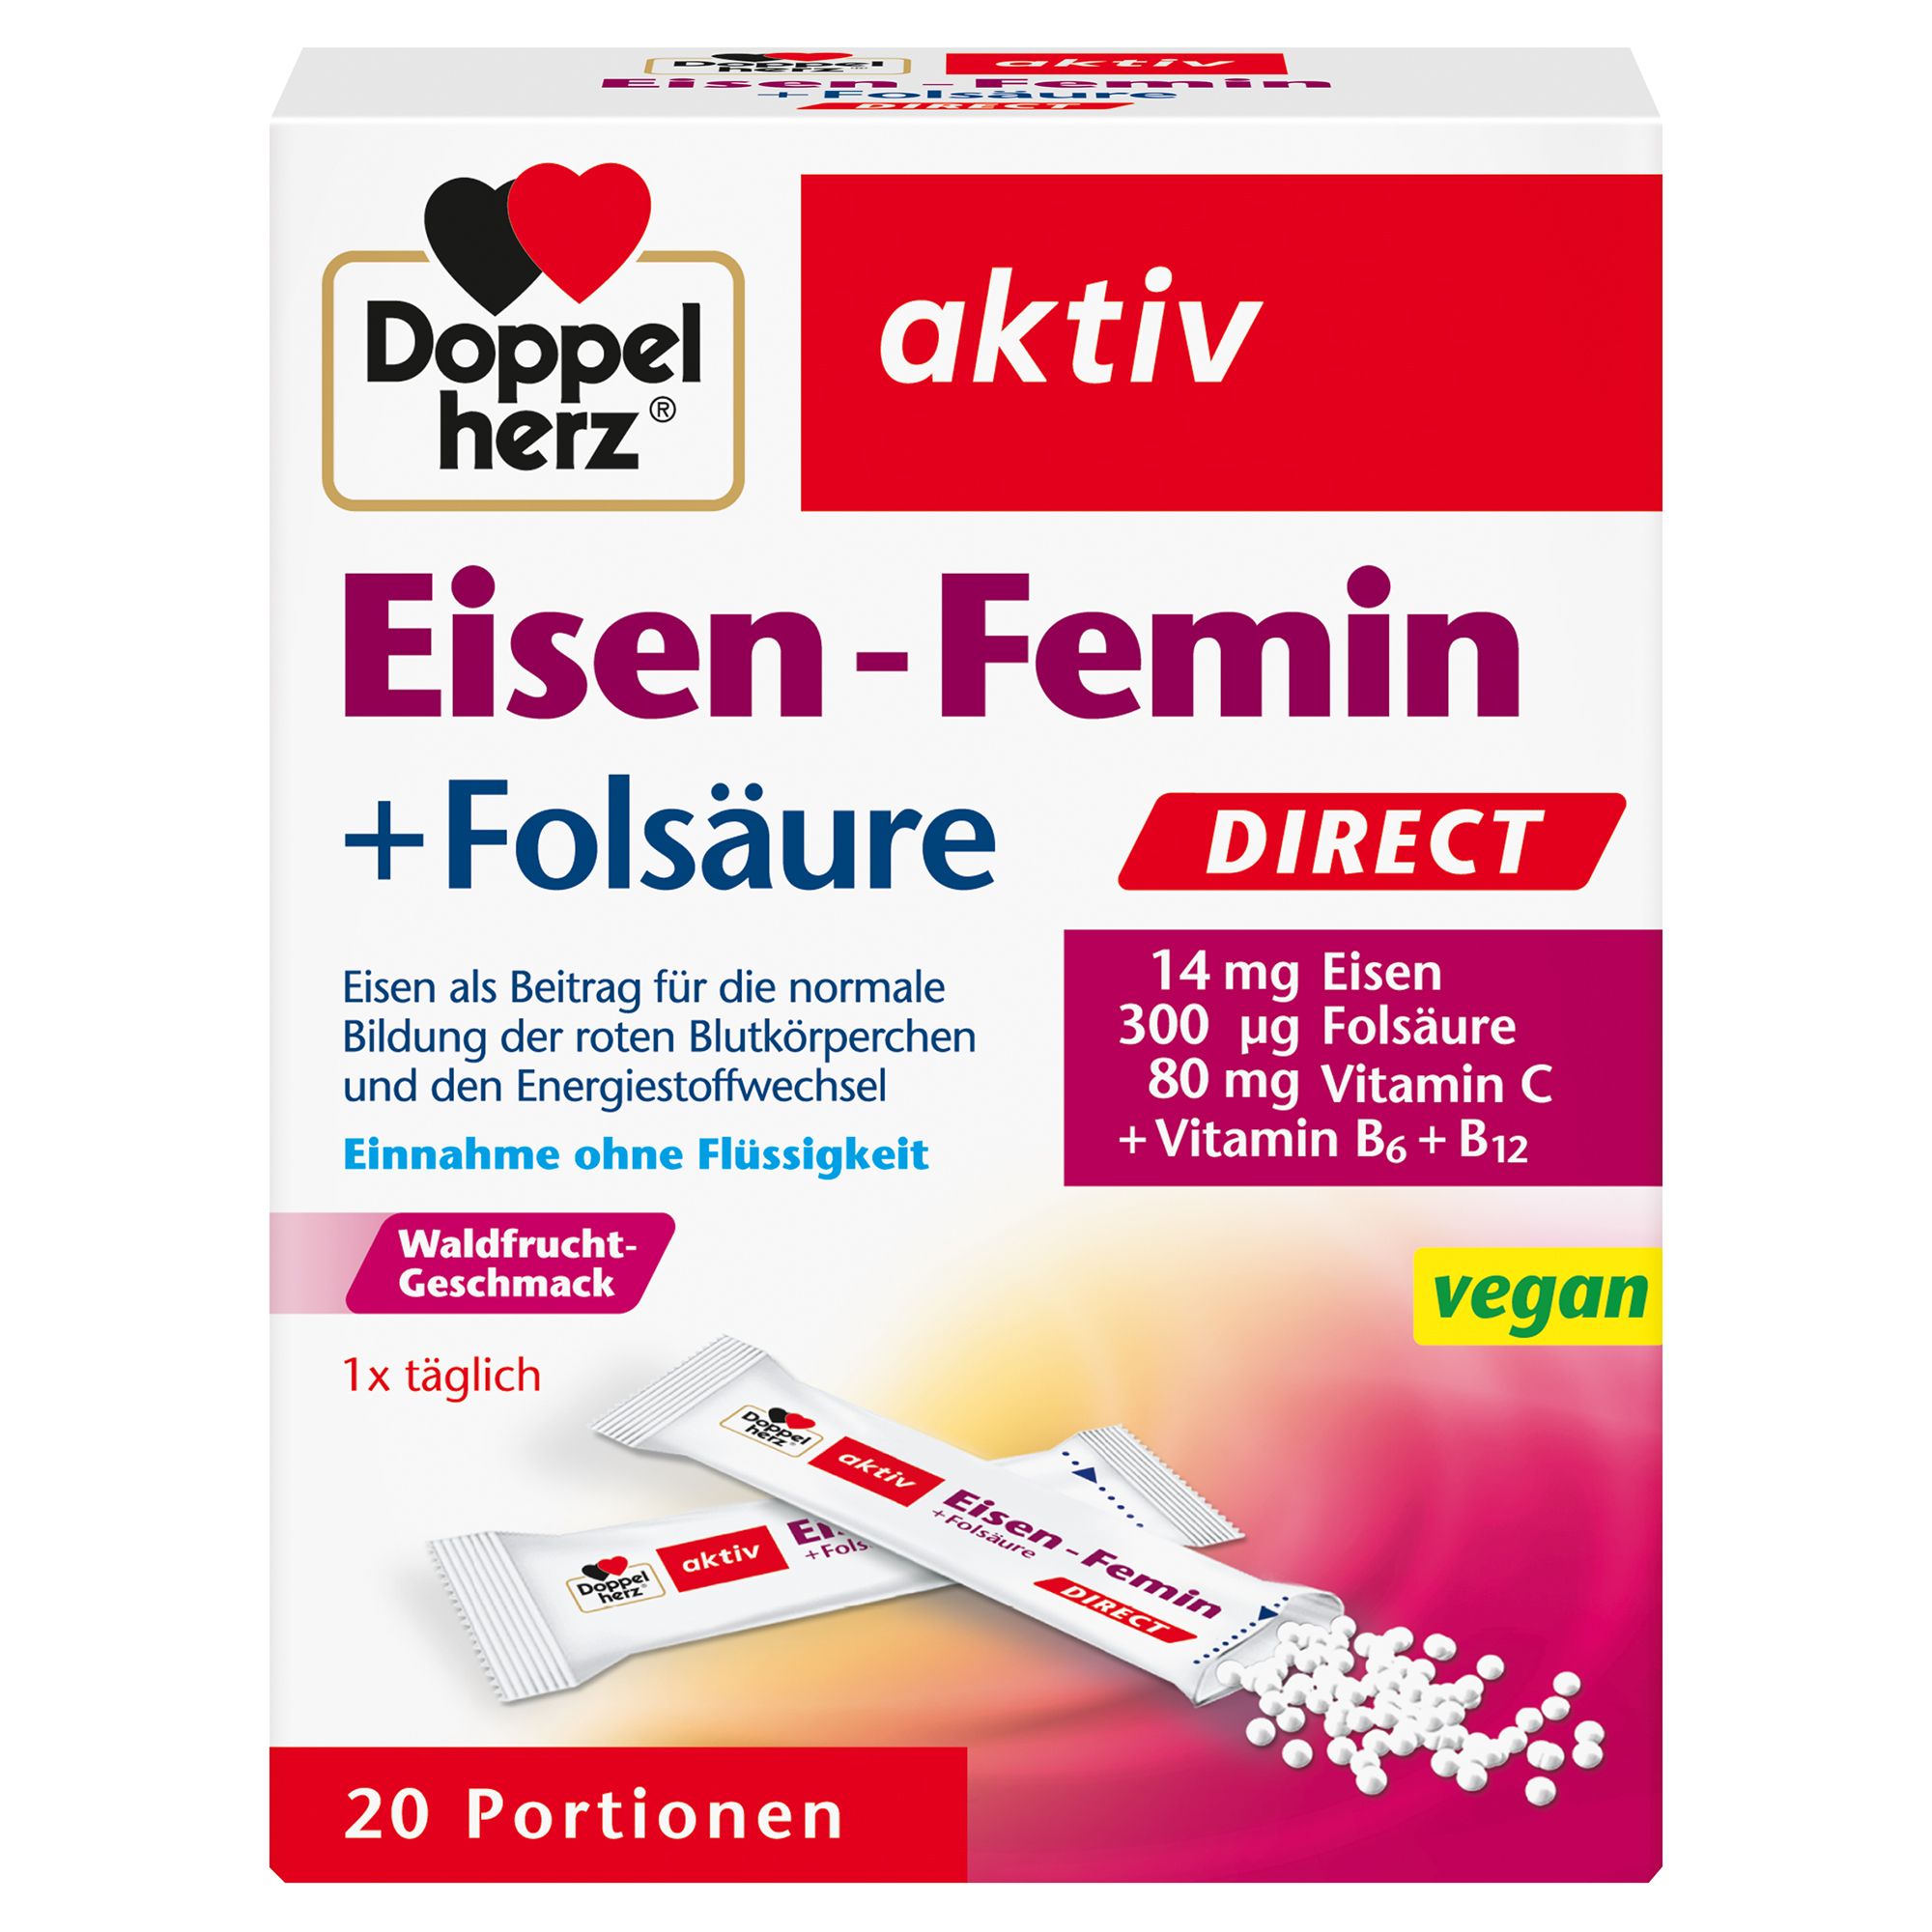 Image of Doppelherz Eisen-Femin DIRECT